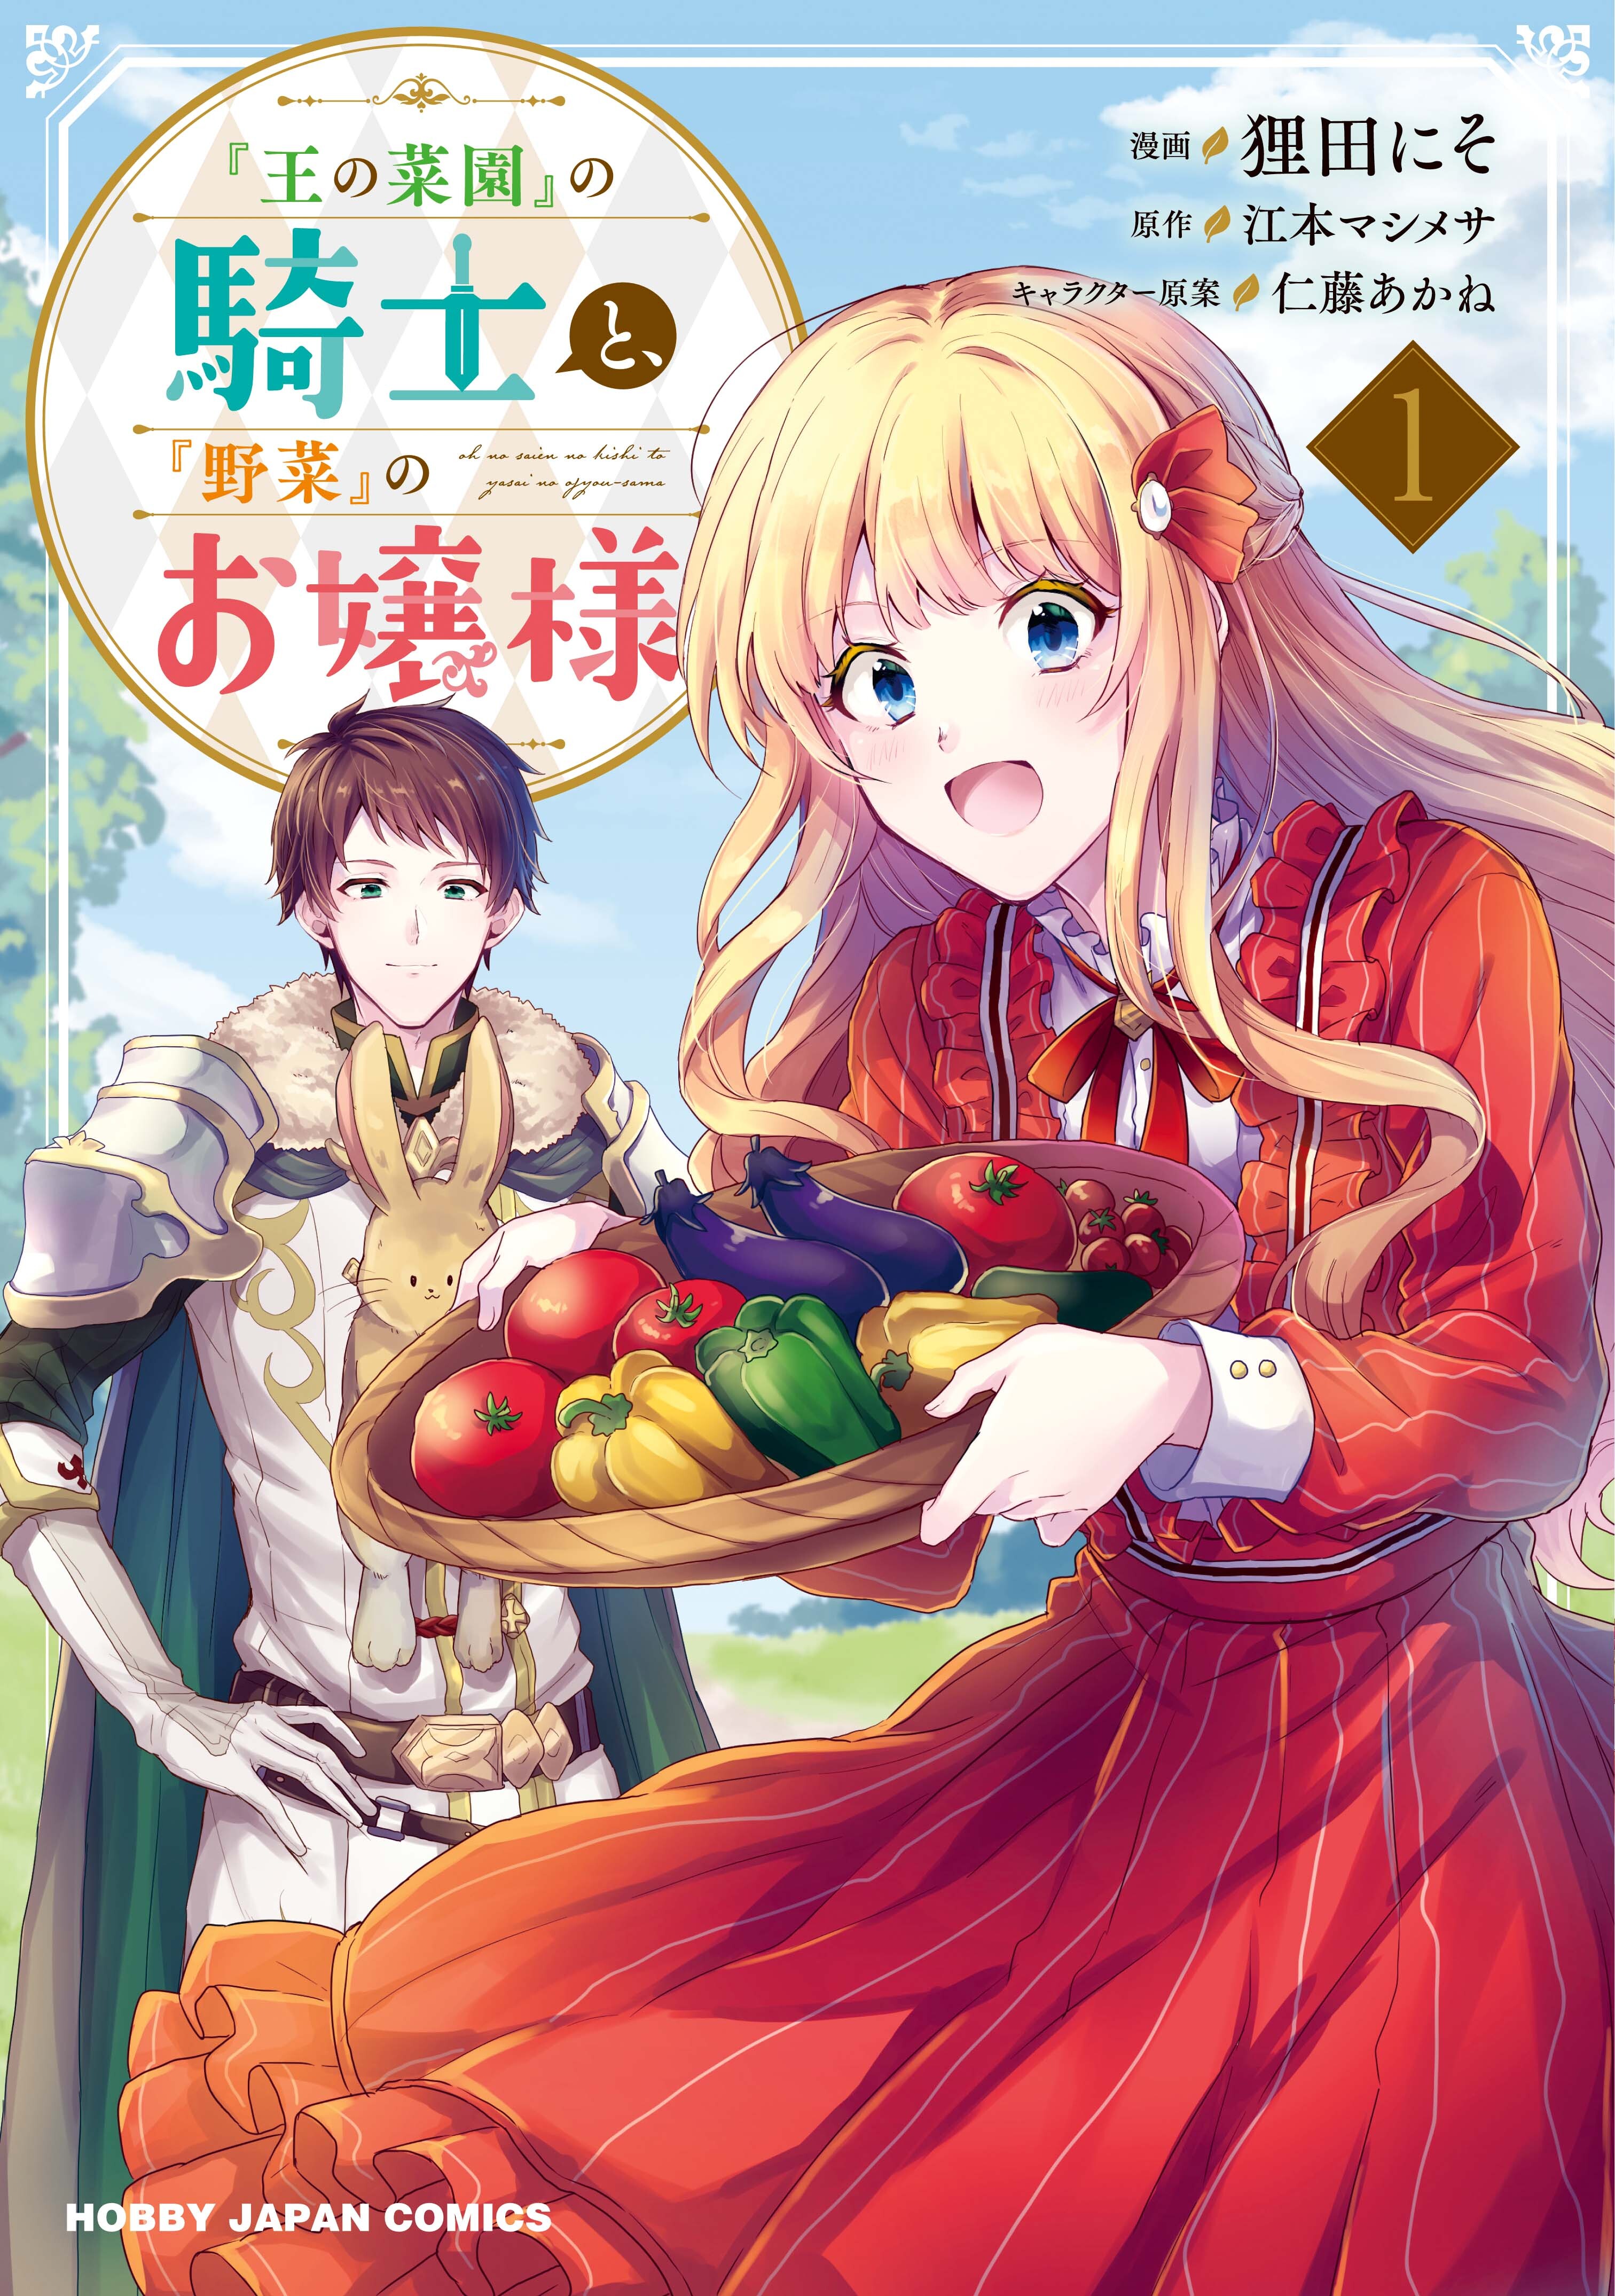 王の菜園 の騎士と 野菜 のお嬢様 無料 試し読みなら Amebaマンガ 旧 読書のお時間です